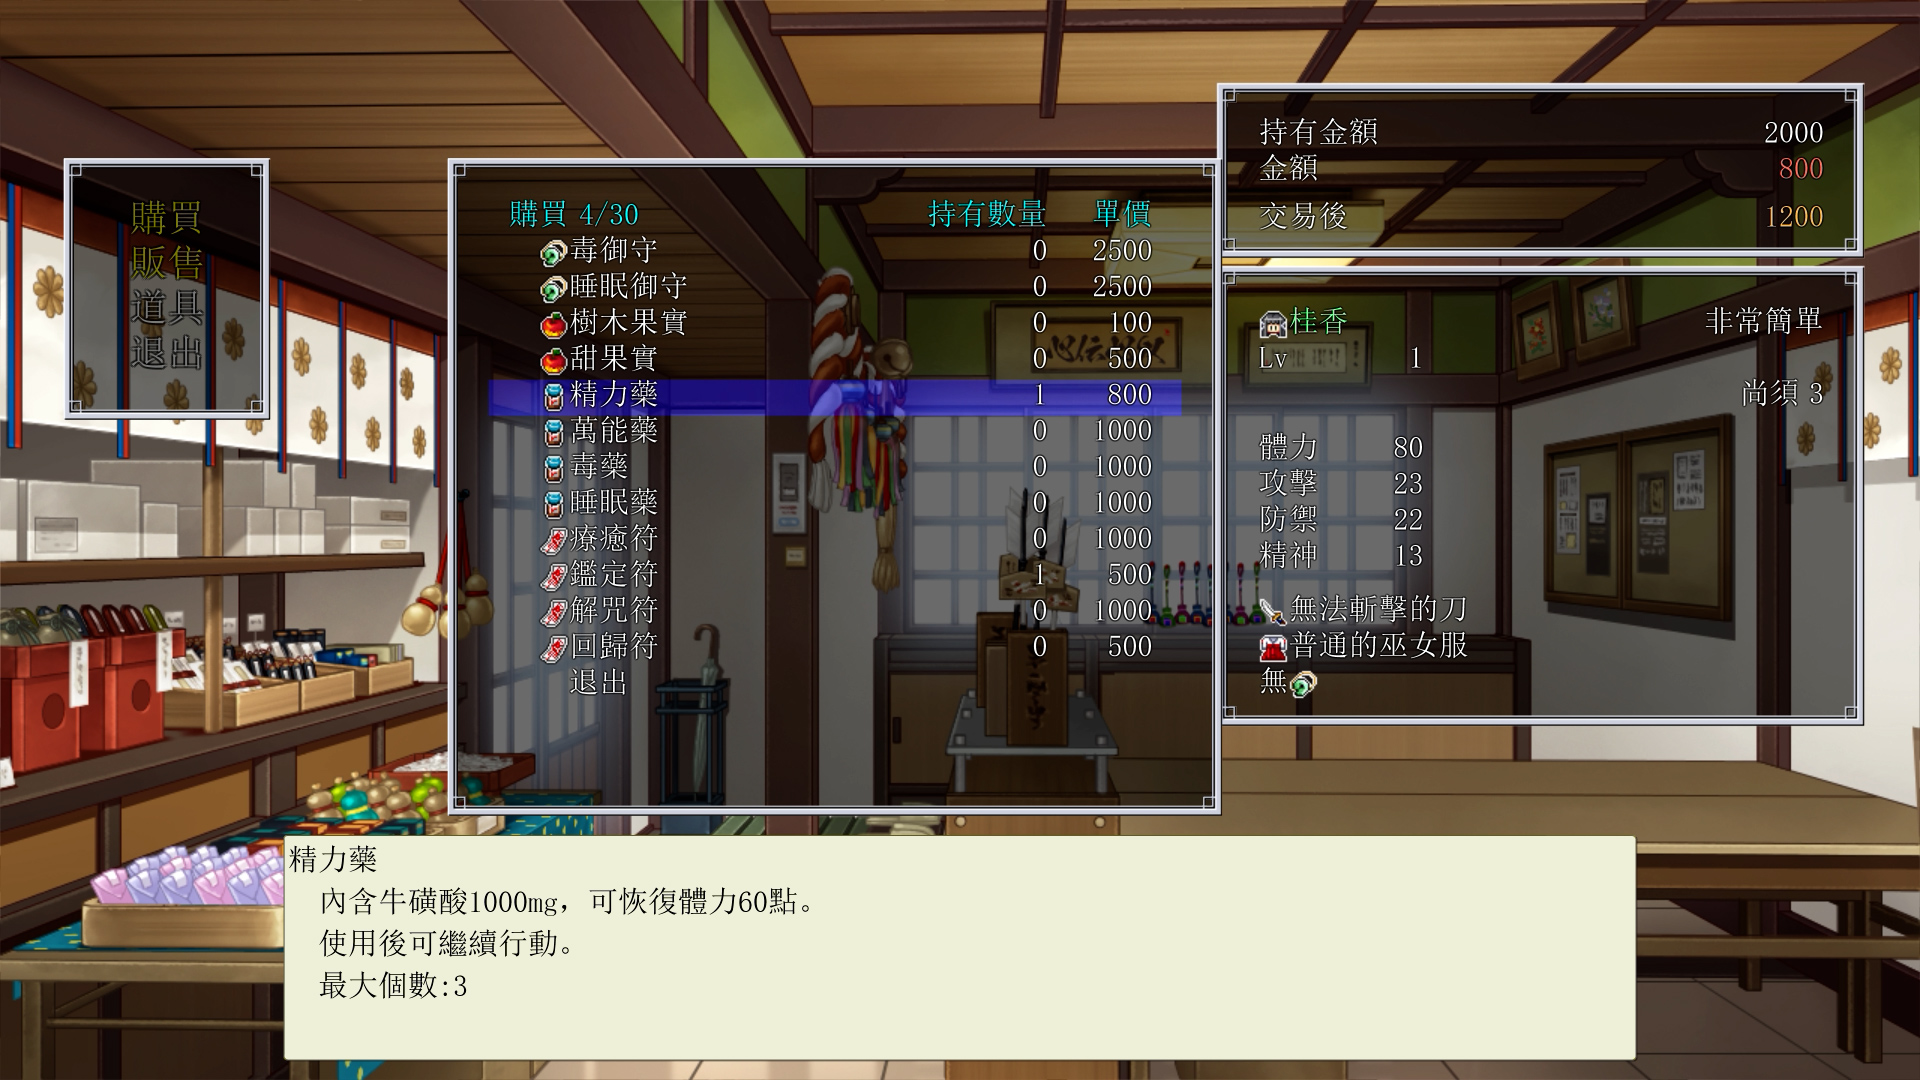 Dawn of Kagura: Keika's Story (Traditional Chinese) - Simulation - 3 - Select